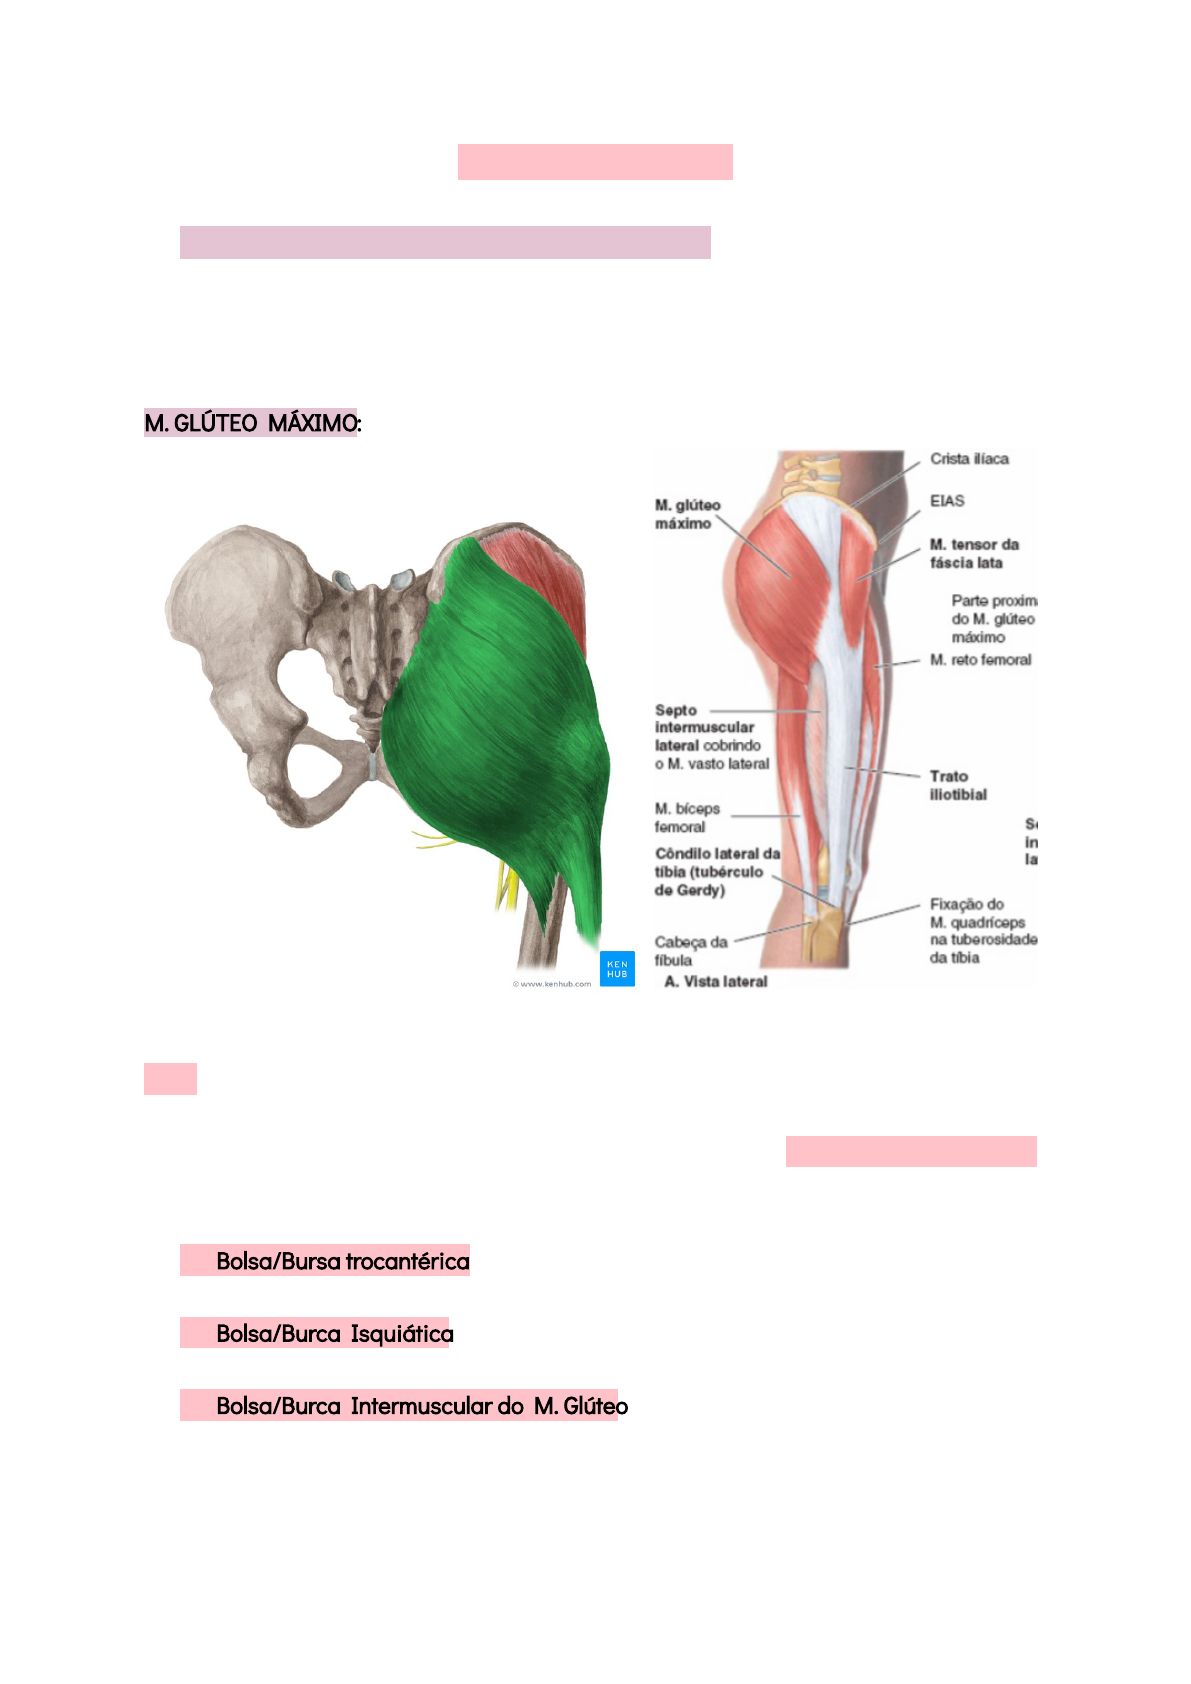 Trato iliotibial – Anatomia papel e caneta